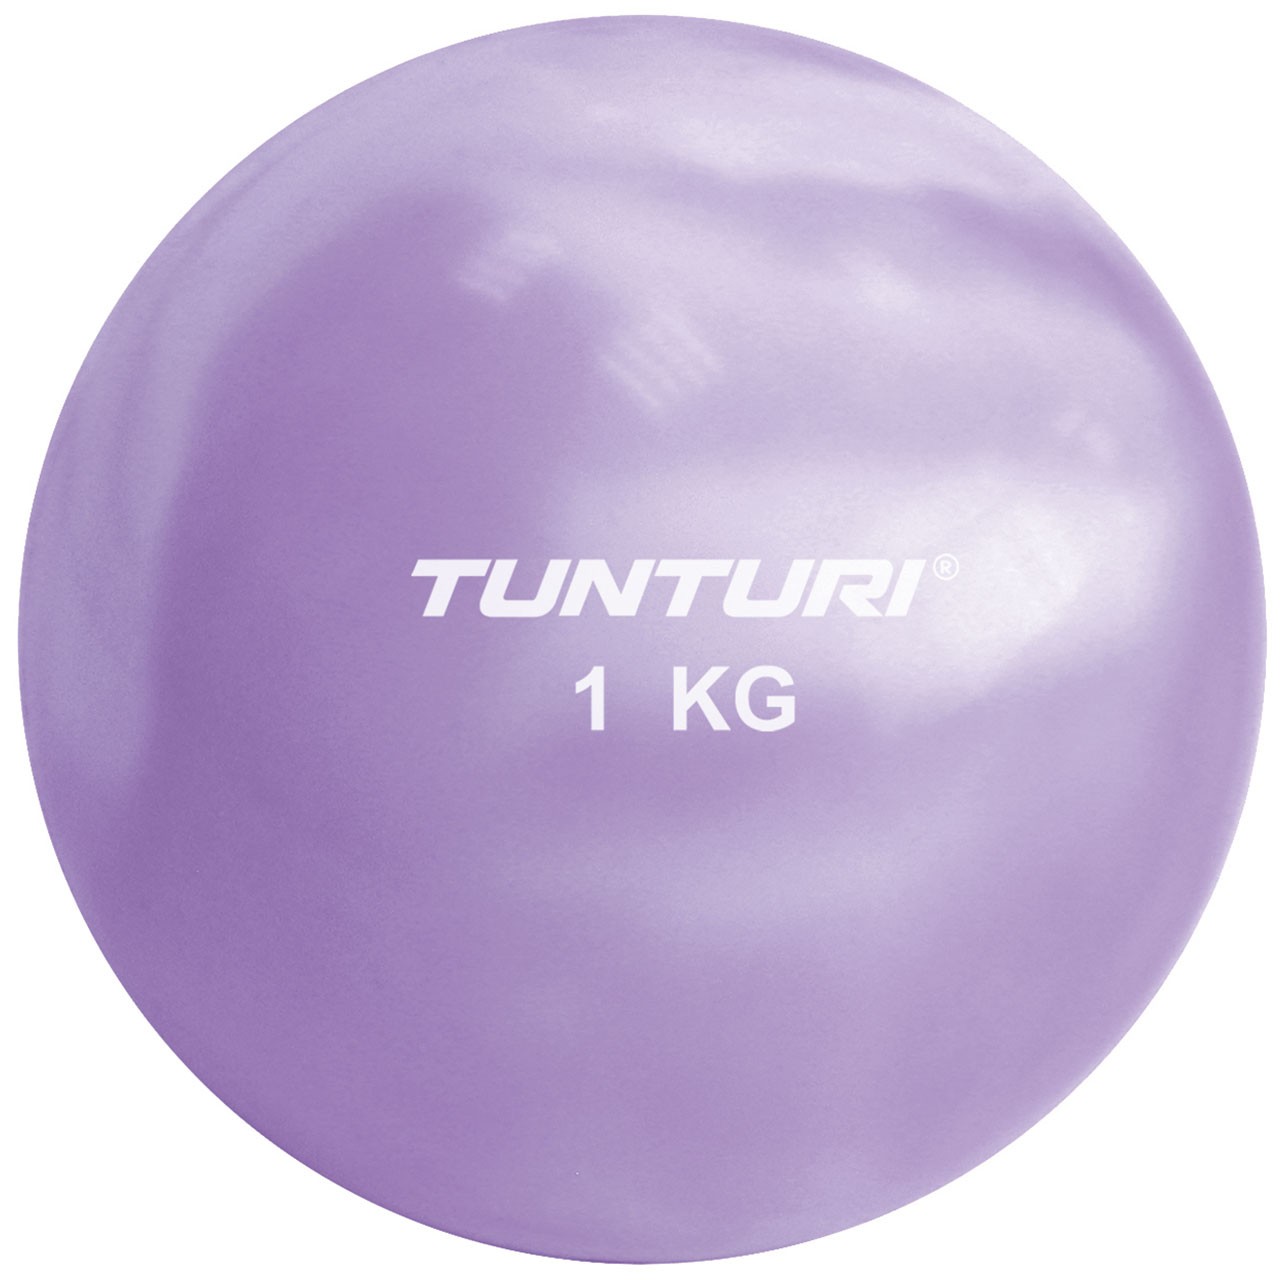 Tunturi Yoga und Pilates Toning Ball 1 kg 12 cm